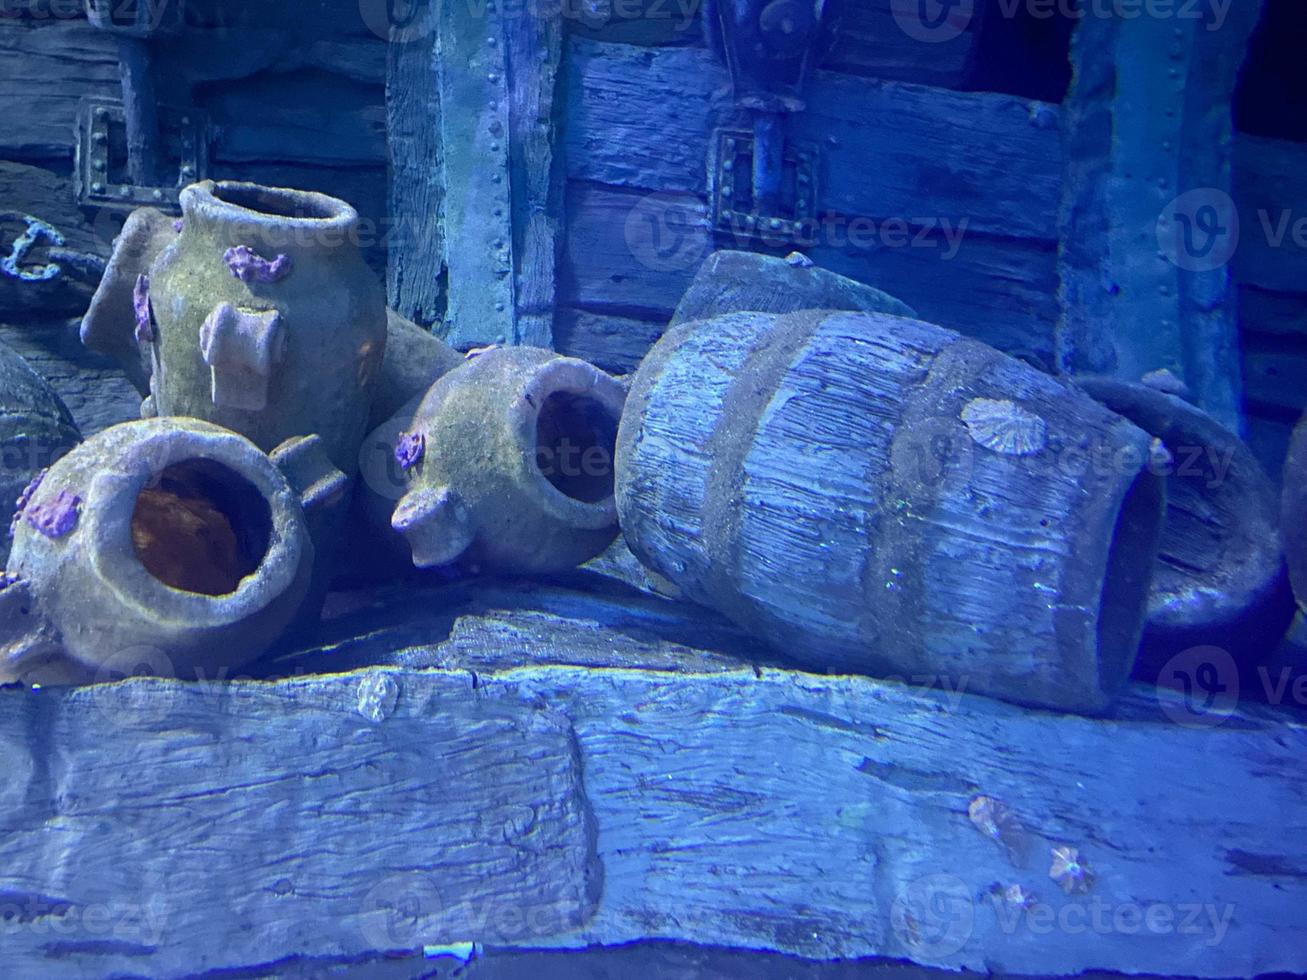 antiguas ollas de barro antiguas y jarrones antiguos hundidos bajo el agua. telón de fondo para el buceo foto